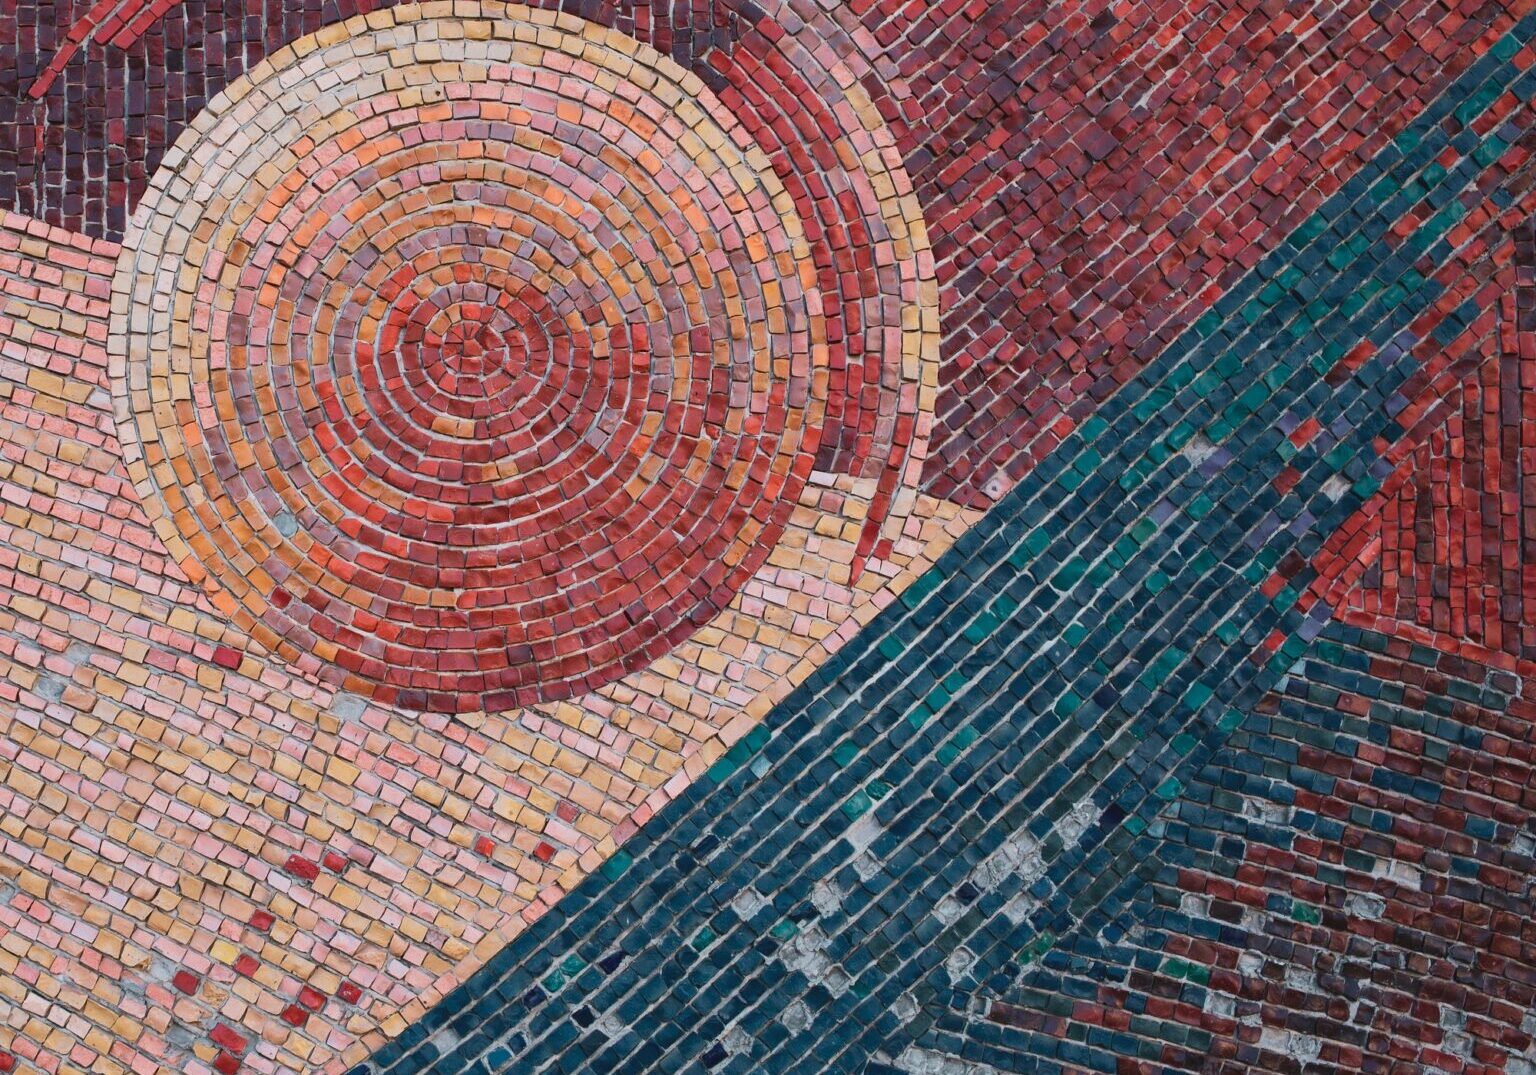 A brick mosaic with a circle